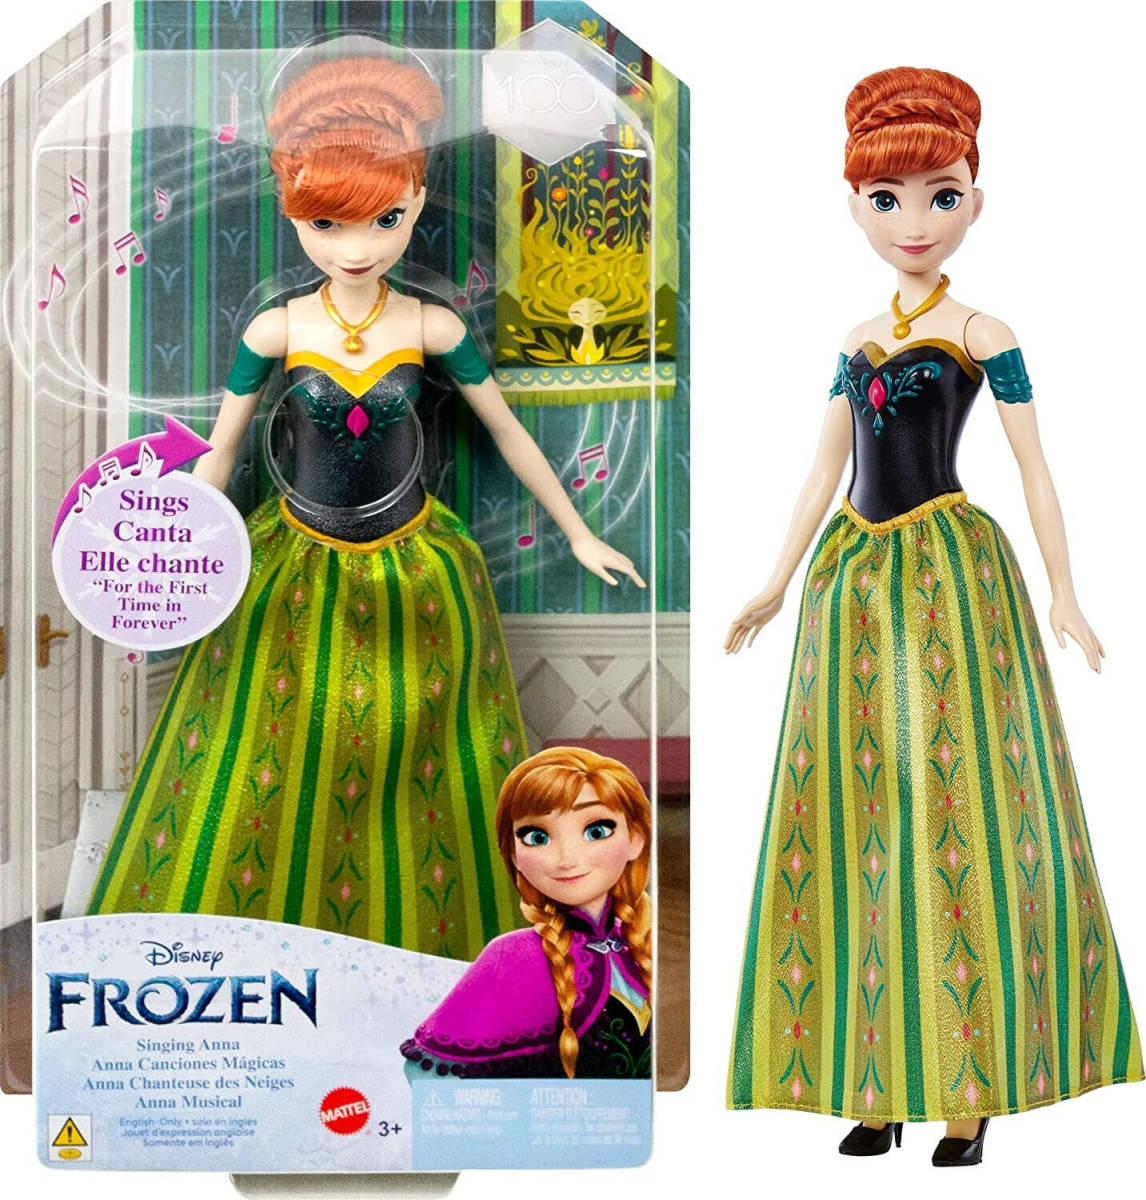 Disney Frozen Singing Anna Doll 海外 即決